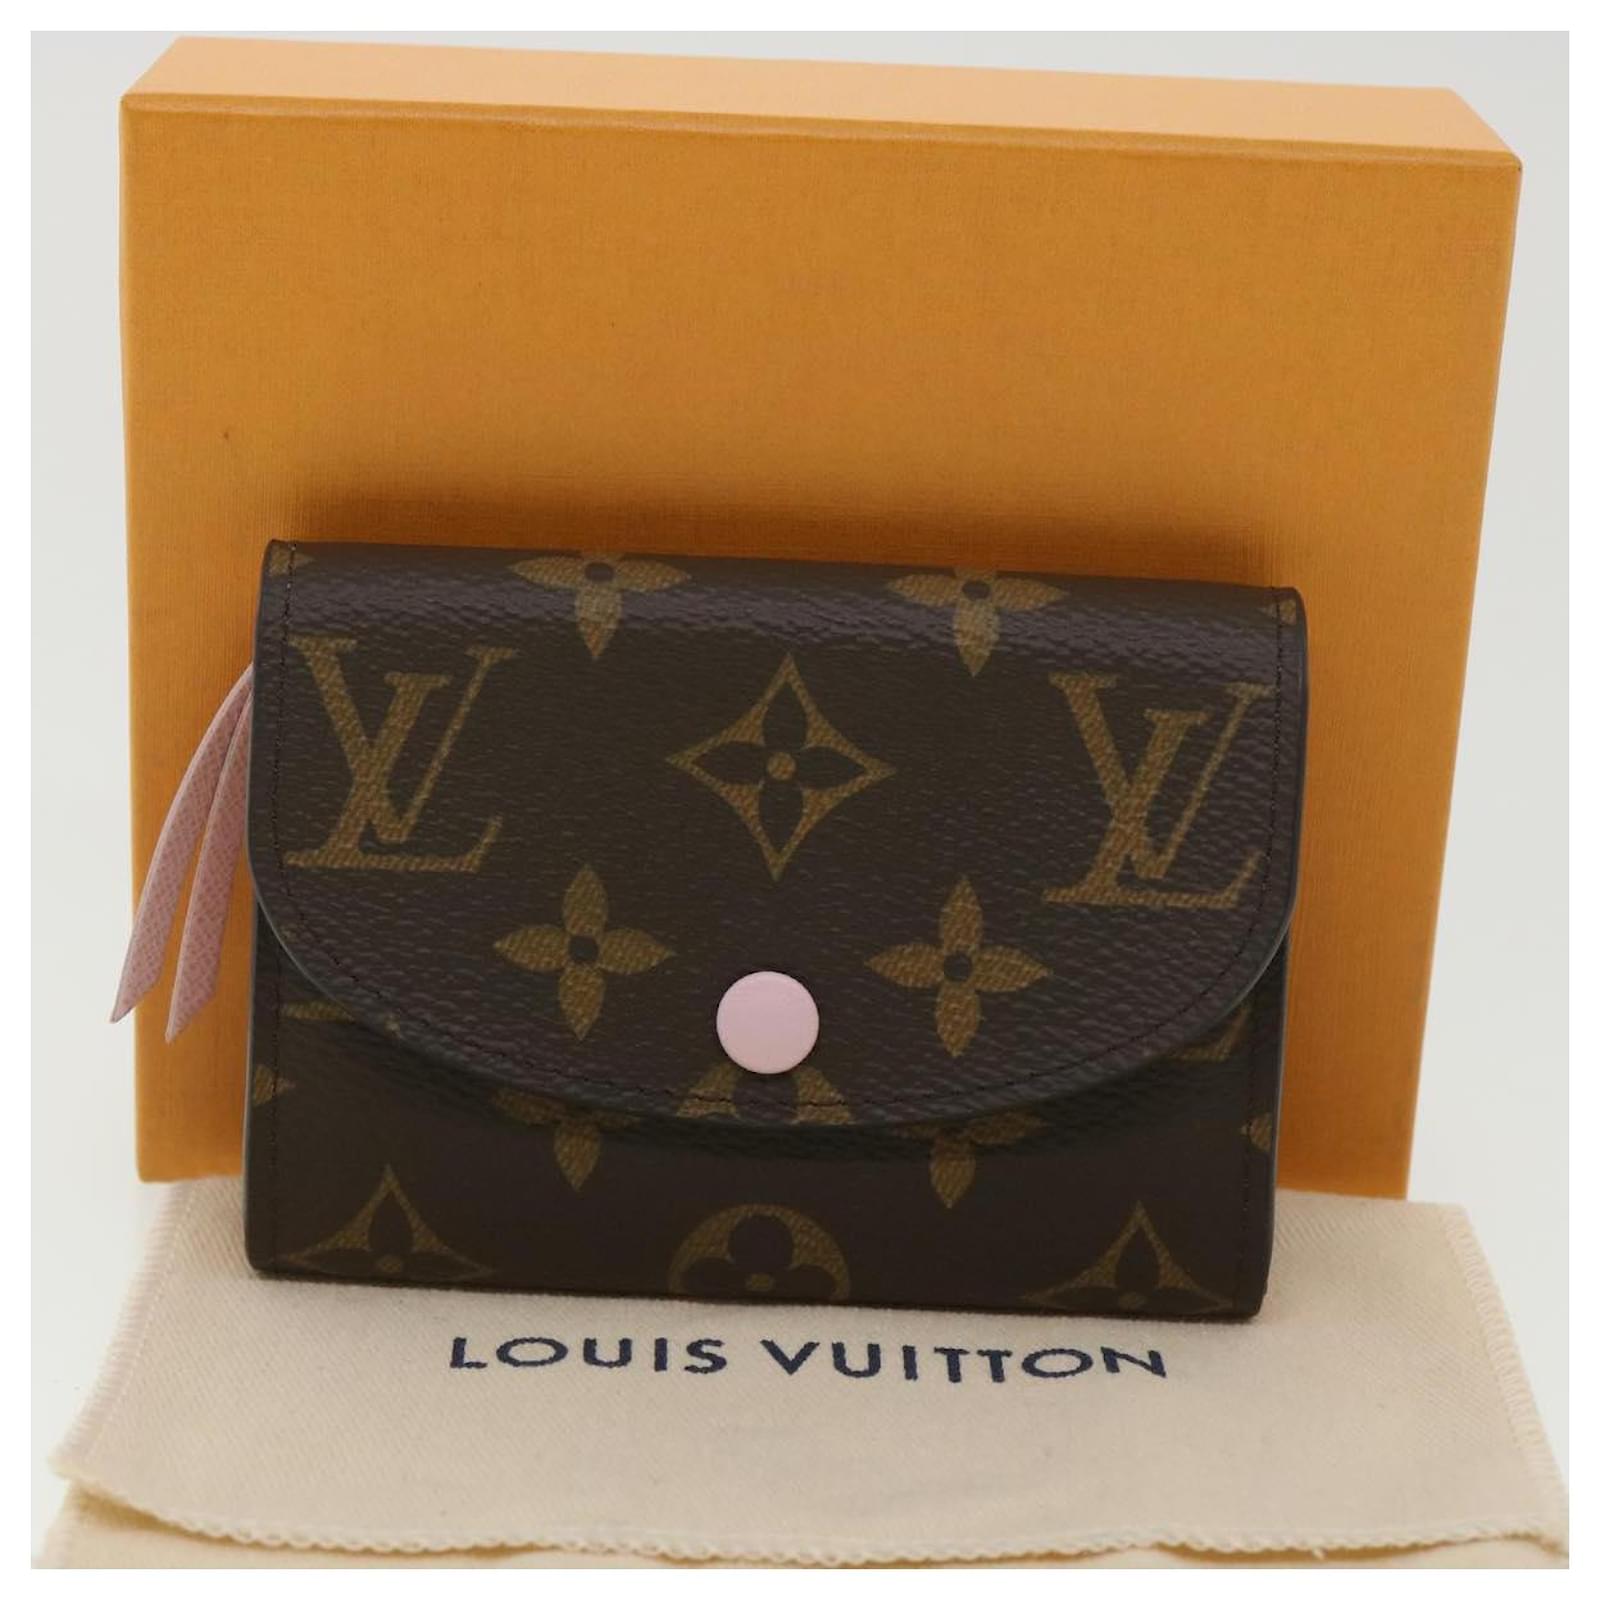 AUTHENTIC LOUIS VUITTON ROSALIE COIN PURSE | Authentic louis vuitton,  Vuitton, Louis vuitton